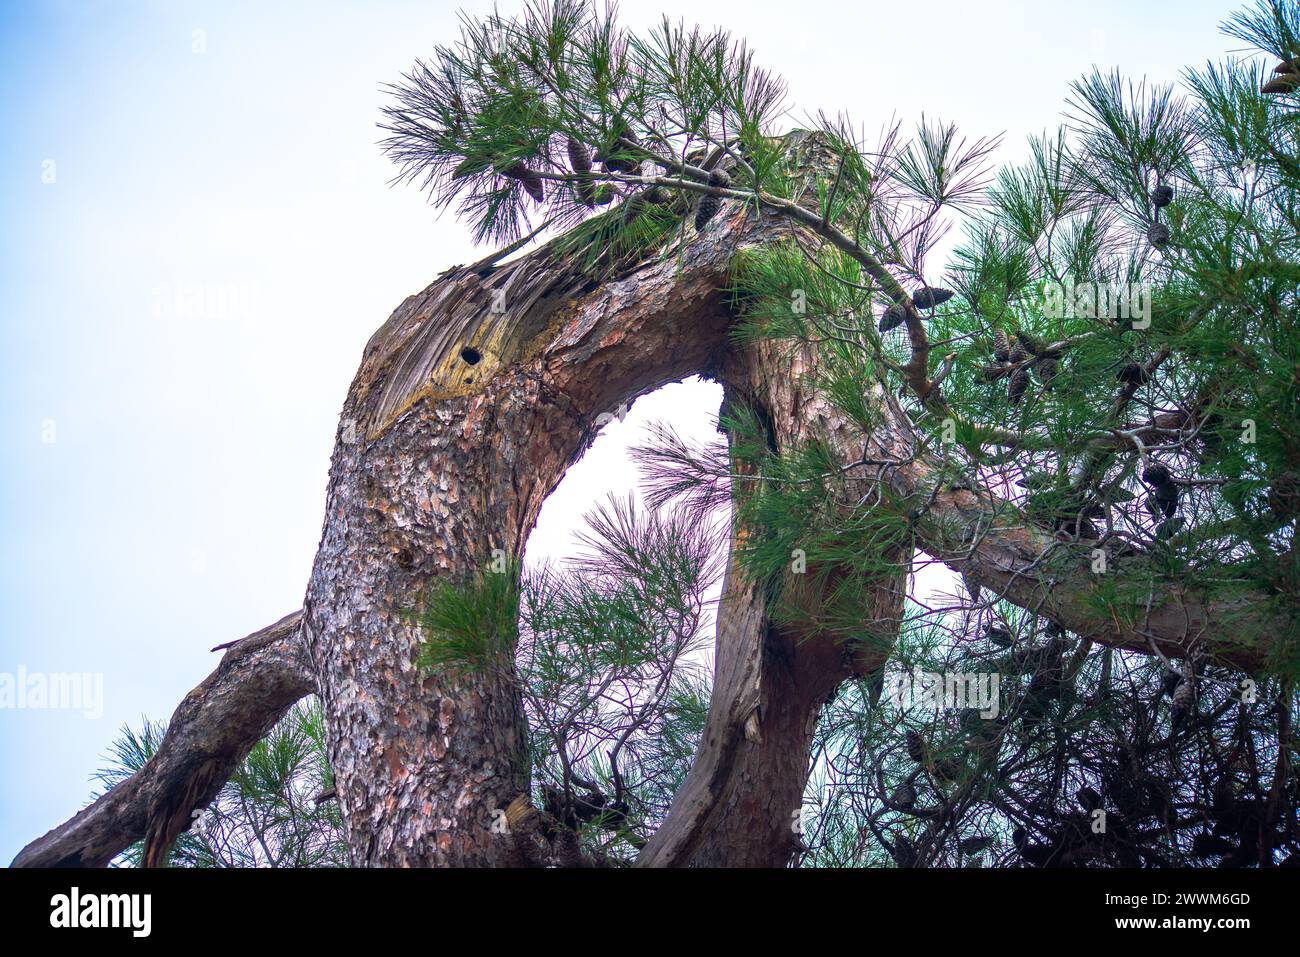 Oddity della natura: Un albero dalla forma strana si erge come una meraviglia unica e particolare nel paesaggio esterno, che mostra il fascino distintivo della natura Foto Stock